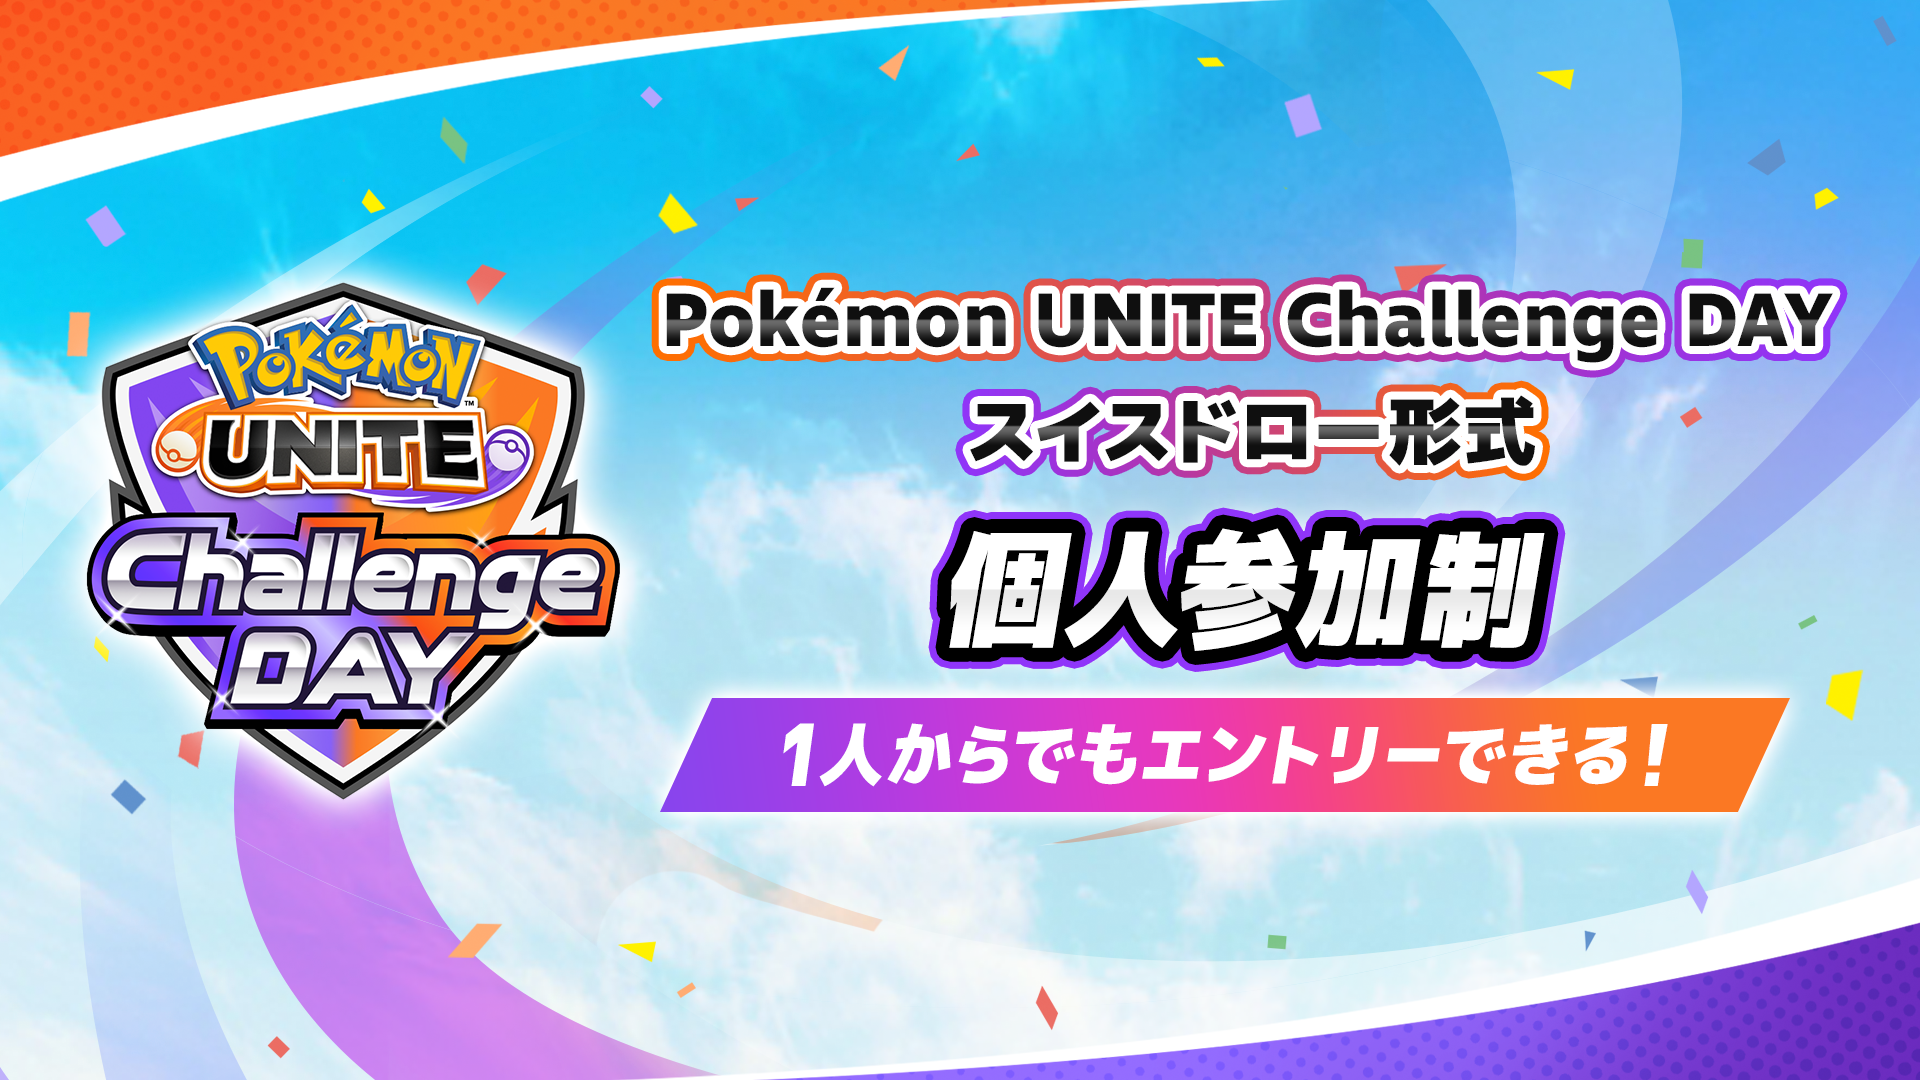 Pokemon UNITE Challenge DAY 11.04 個人参加制 スイスドロー形式 午前の部・午後の部 計3イベント開催！